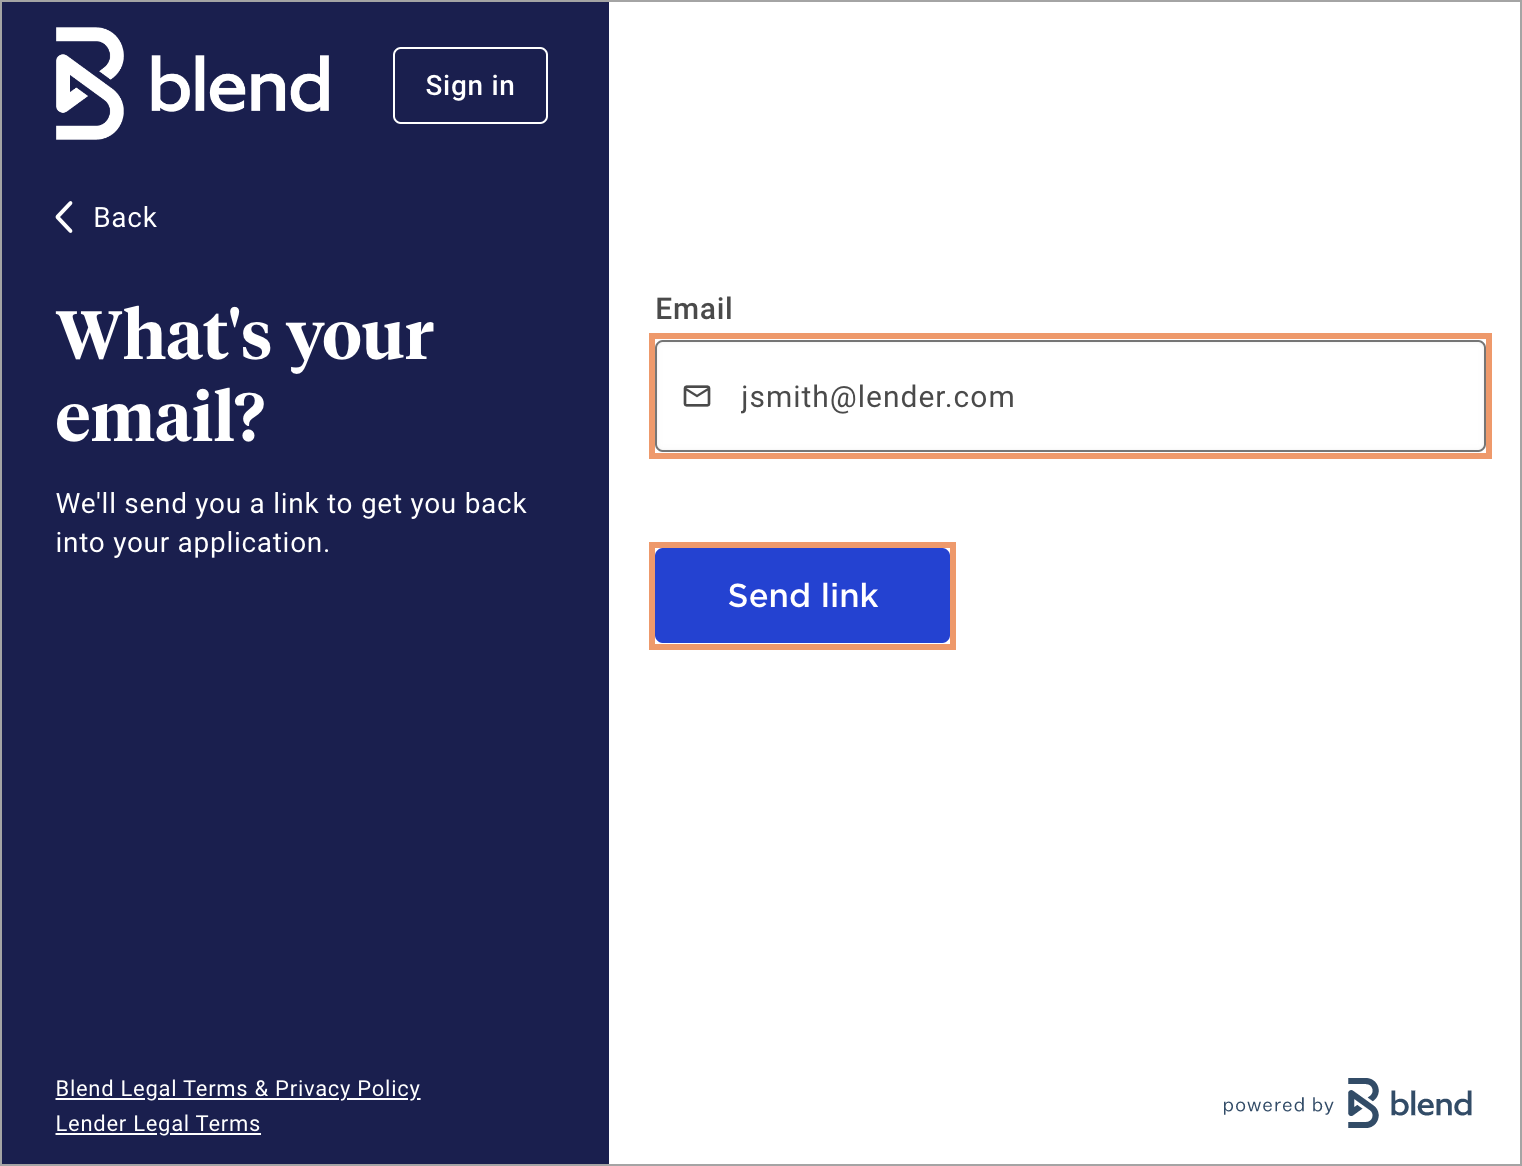 blend_email_send_link.png